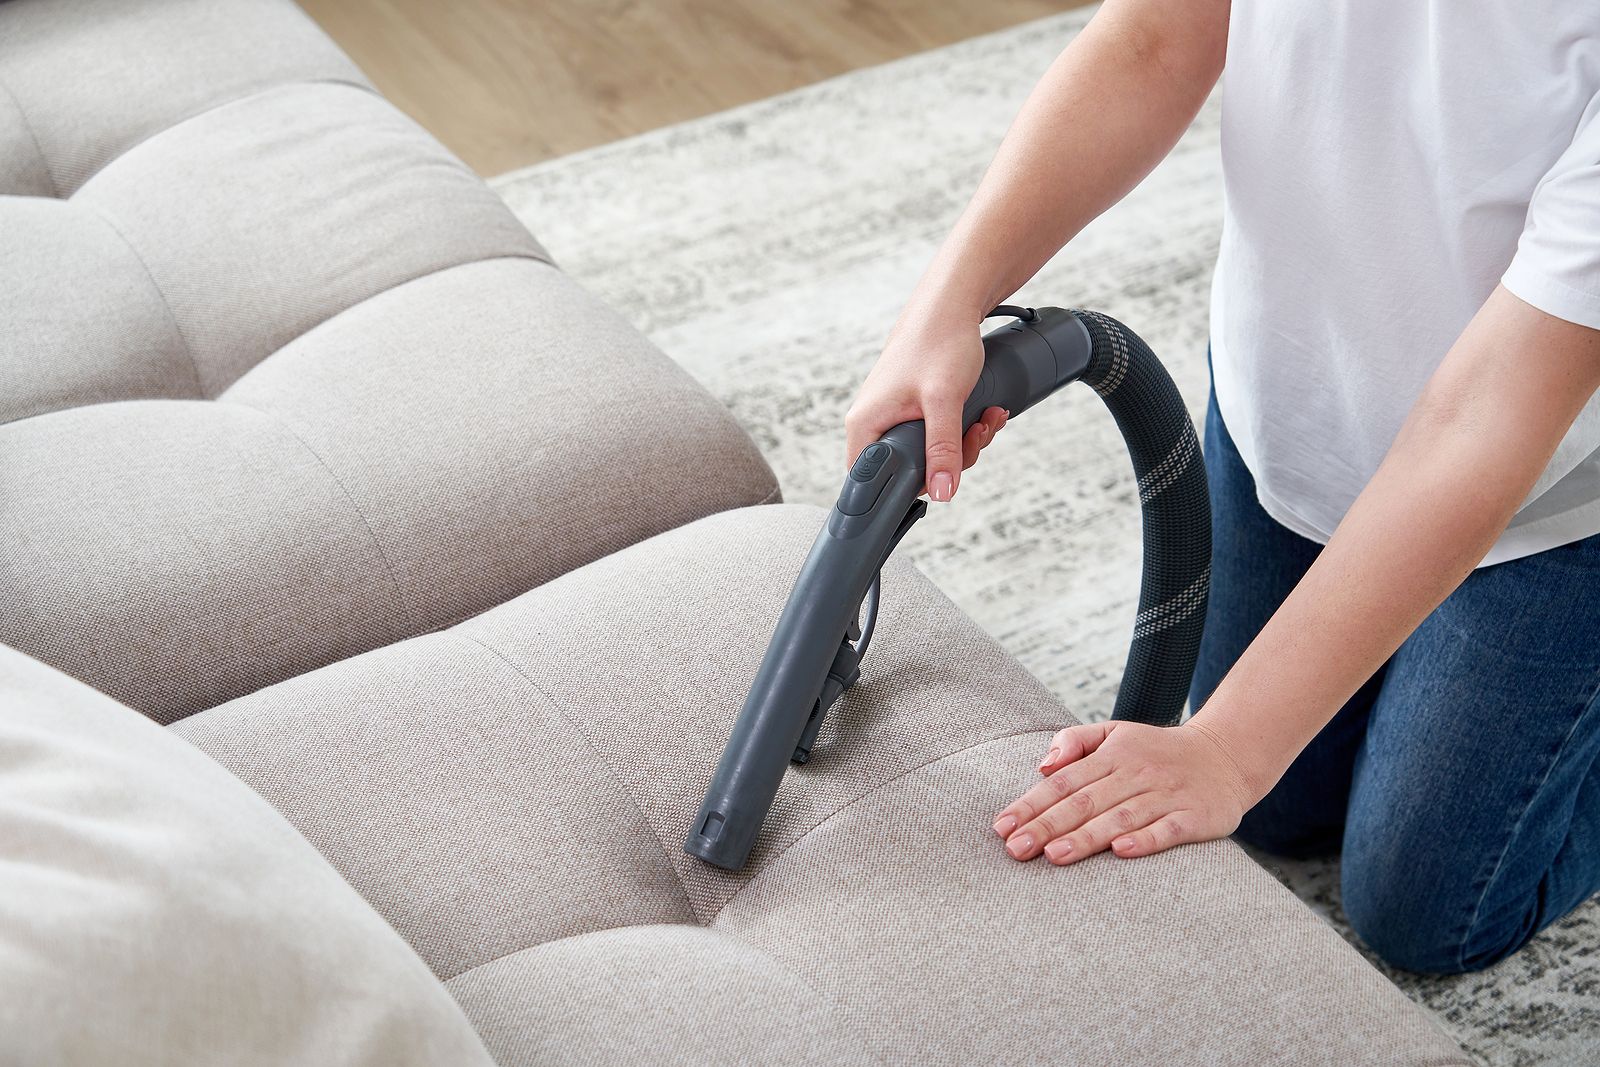 TRUCOS LIMPIEZA: Cómo limpiar el sofá fácil, rápido y barato